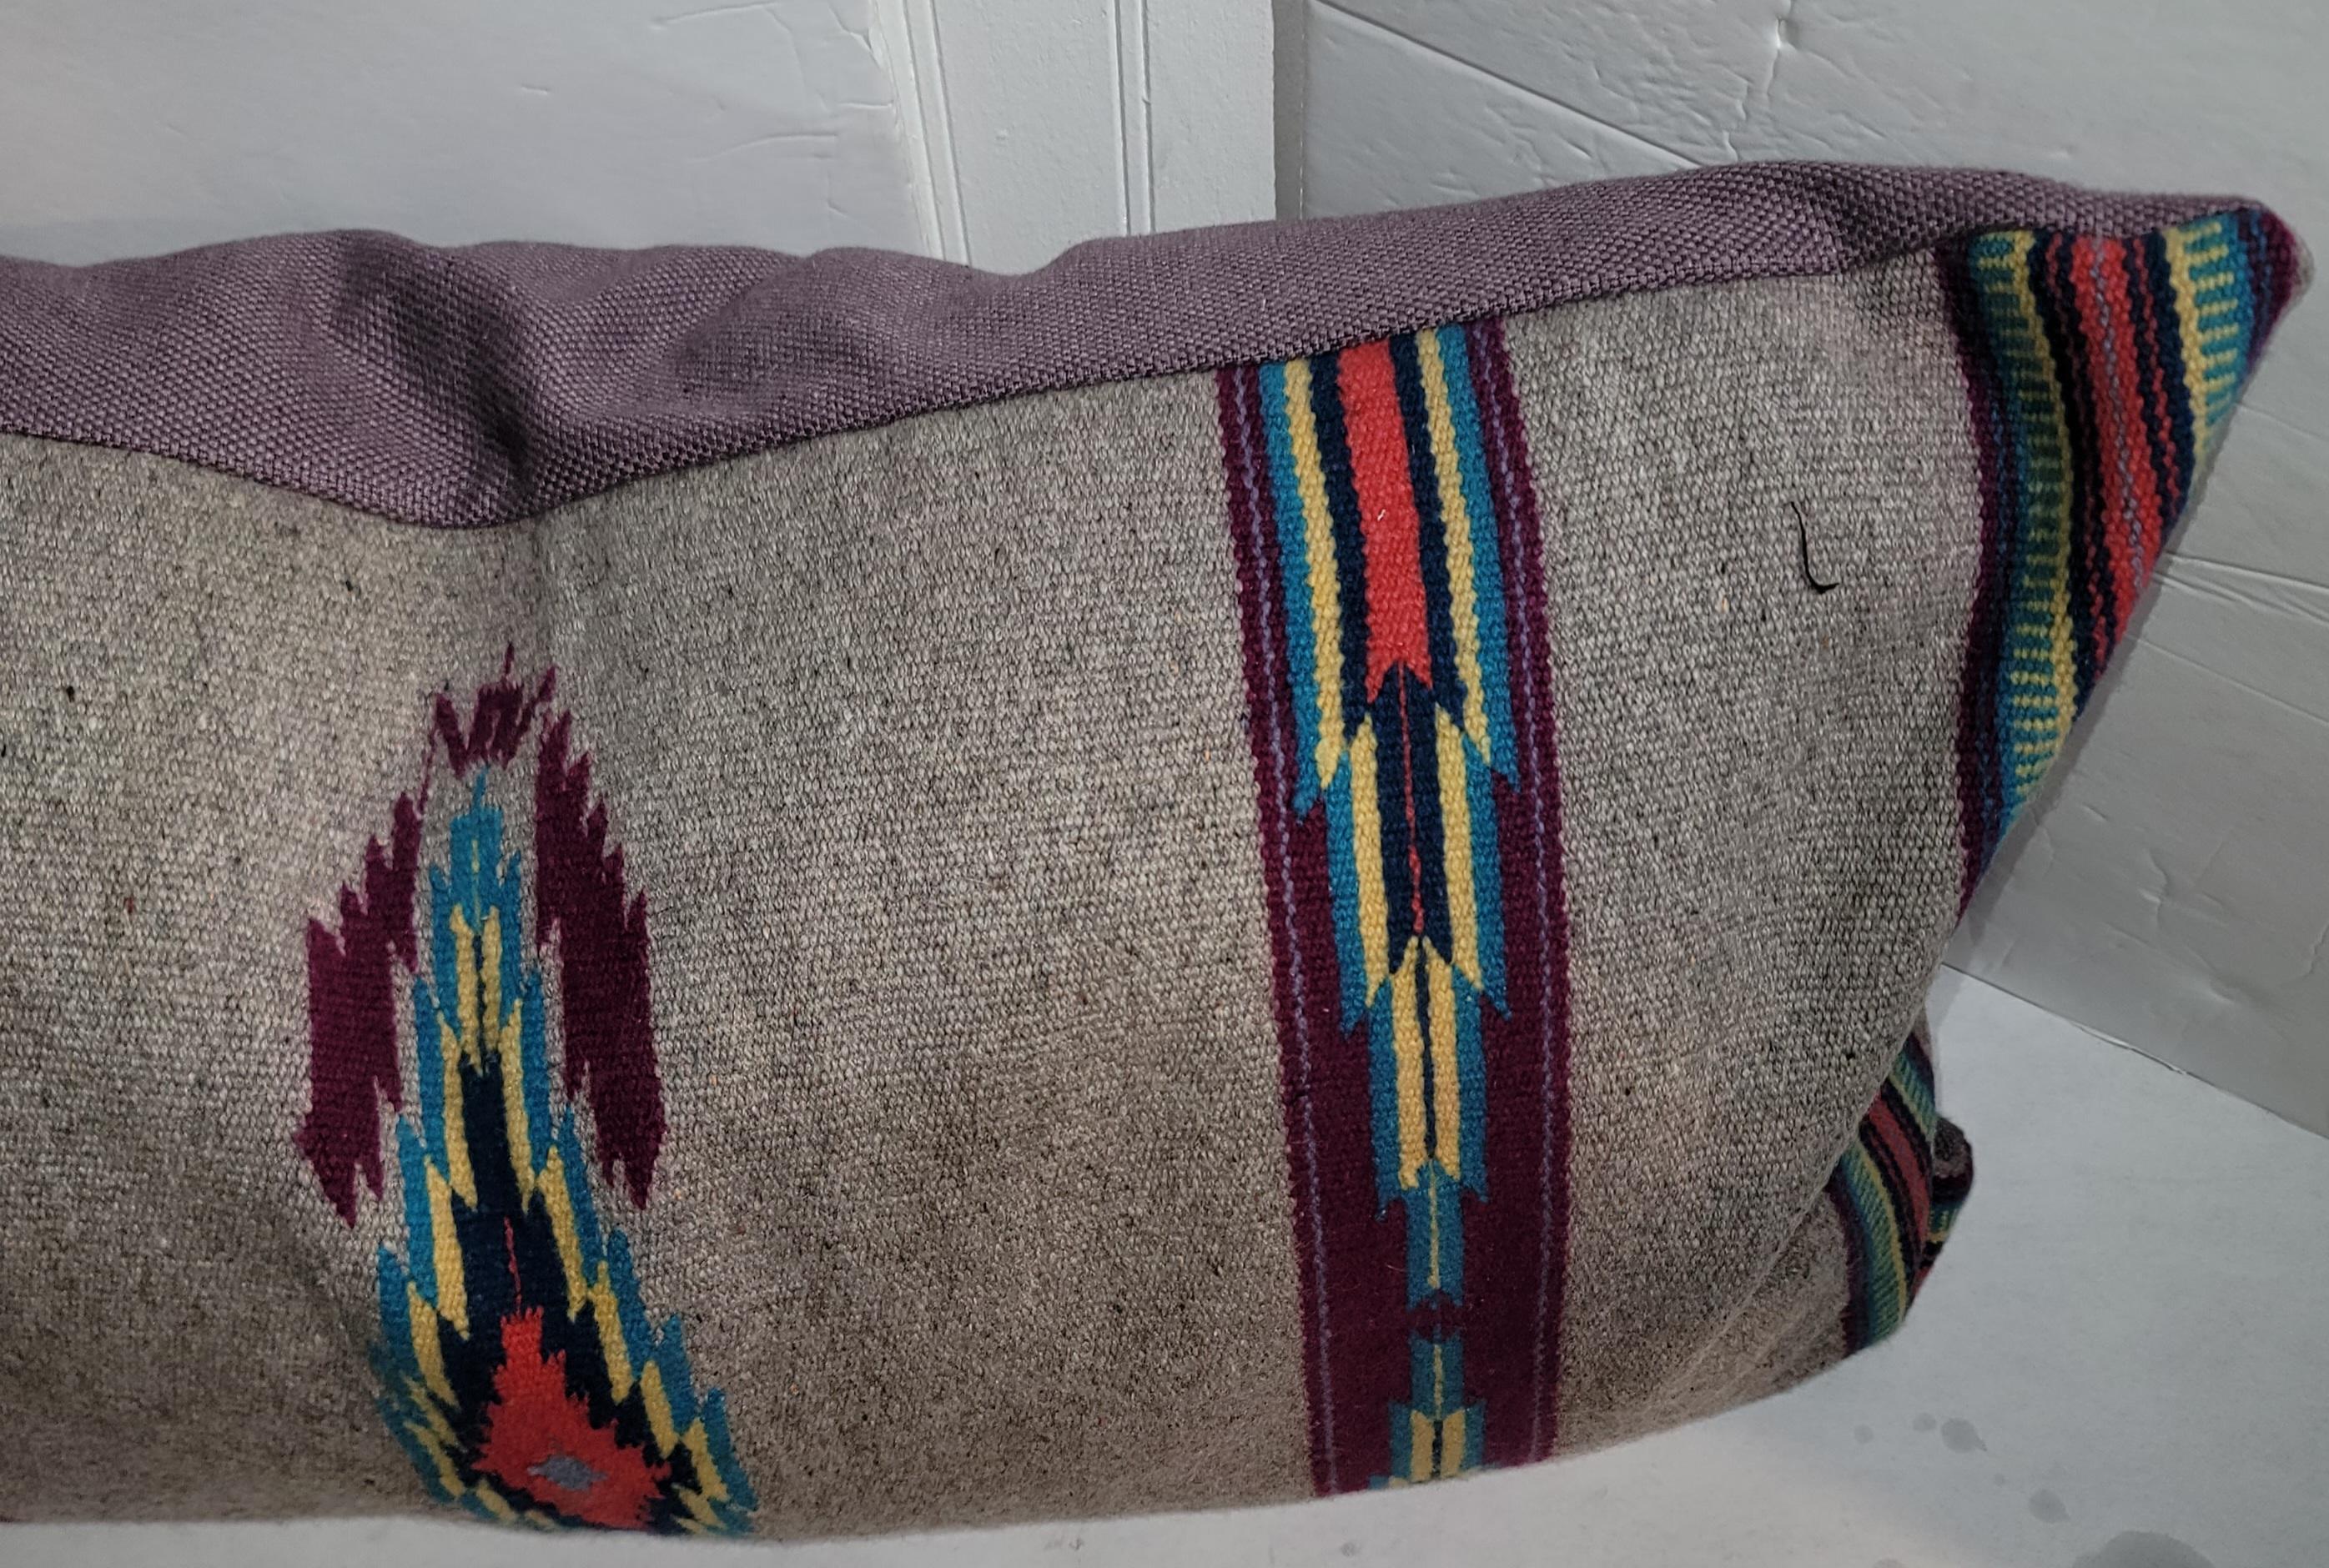 Taie d'oreiller en laine Serape mexicain avec support en lin. Les couleurs vives font ressortir cet oreiller. Les gris sombres sont une excellente utilisation de la couleur de fond avec un rouge profond et quelques bleus et bruns. Équipé d'inserts